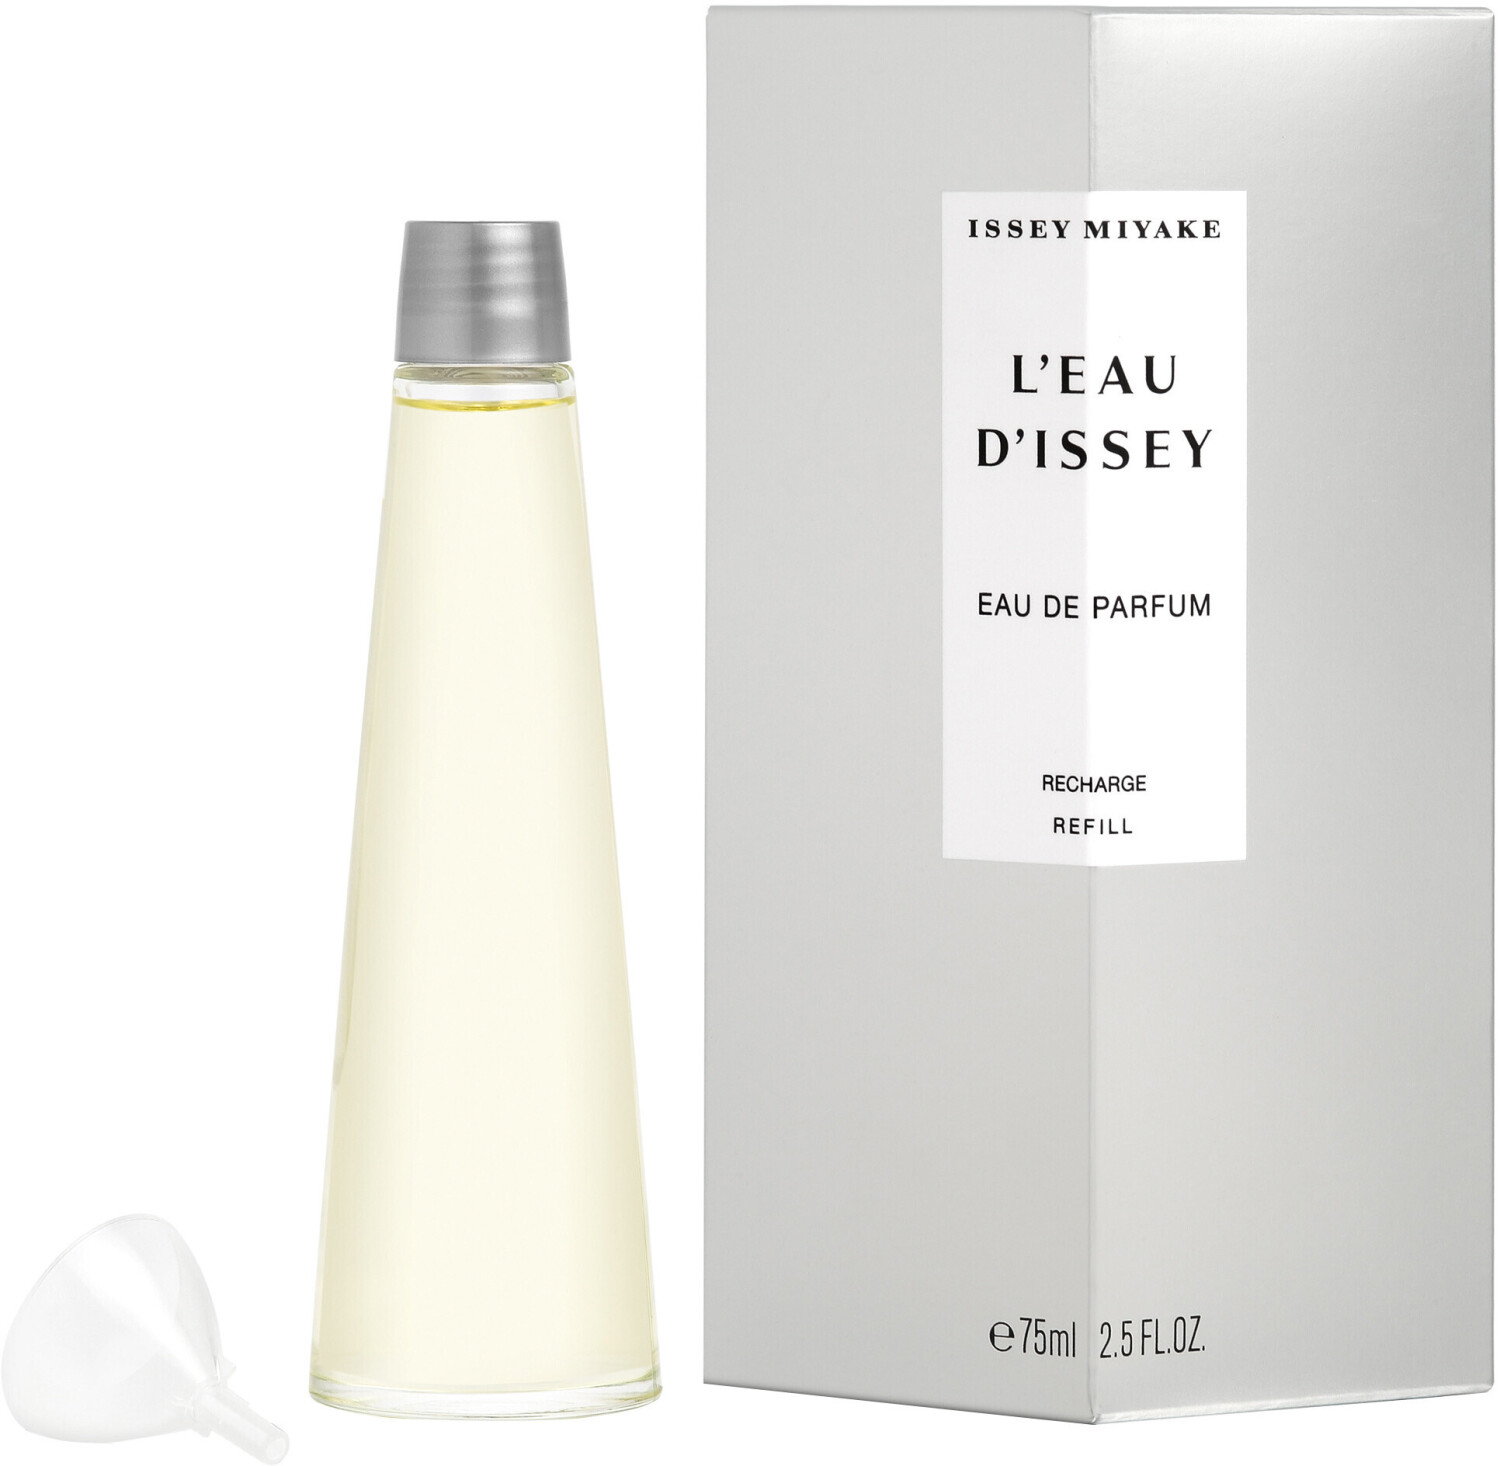 https://cdn.idealo.com/folder/Product/841/2/841234/s1_produktbild_max_1/issey-miyake-l-eau-d-issey-eau-de-parfum-nachfuellung-75ml.jpg